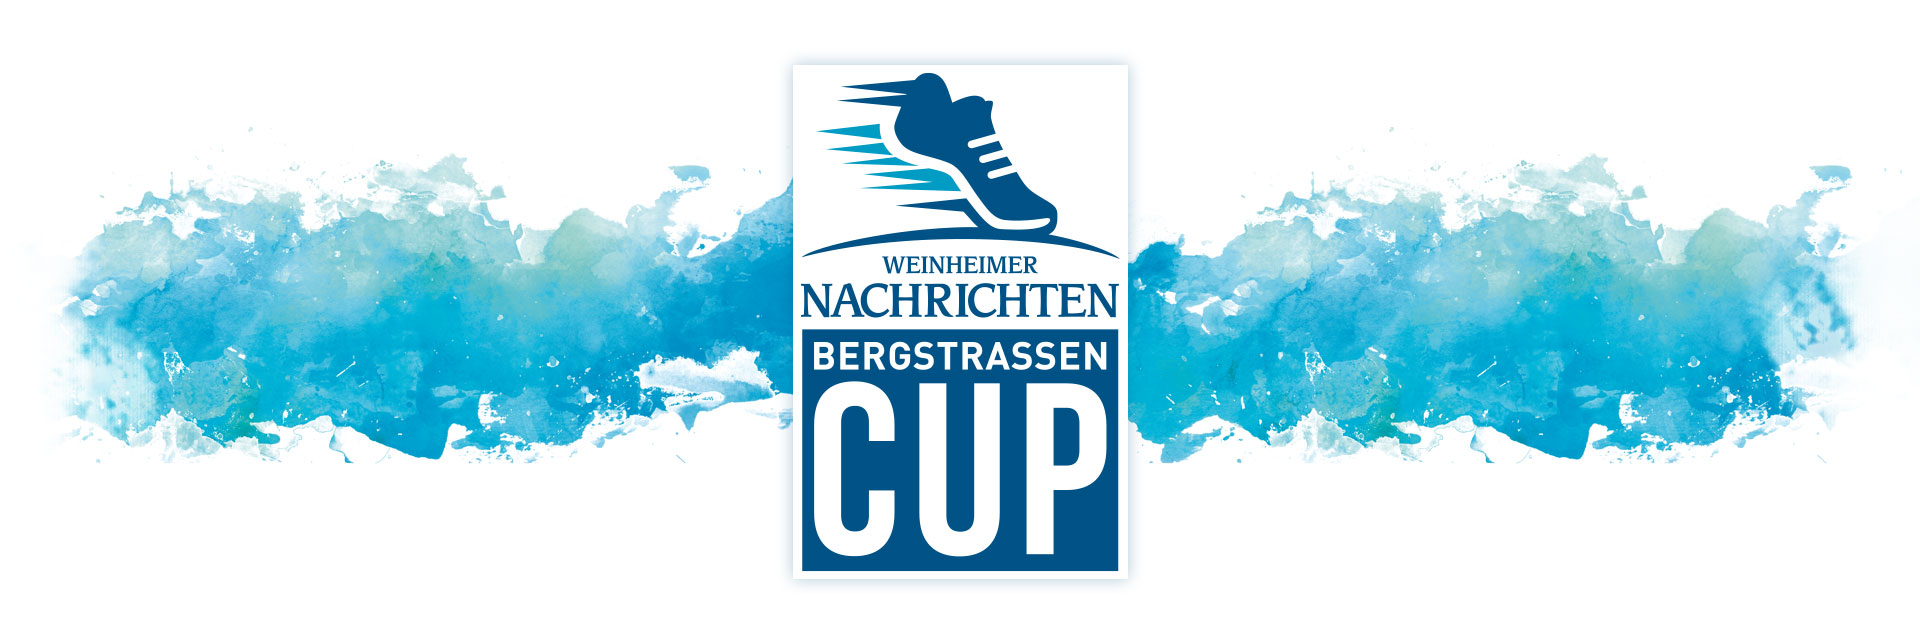 Bergstraßen Cup